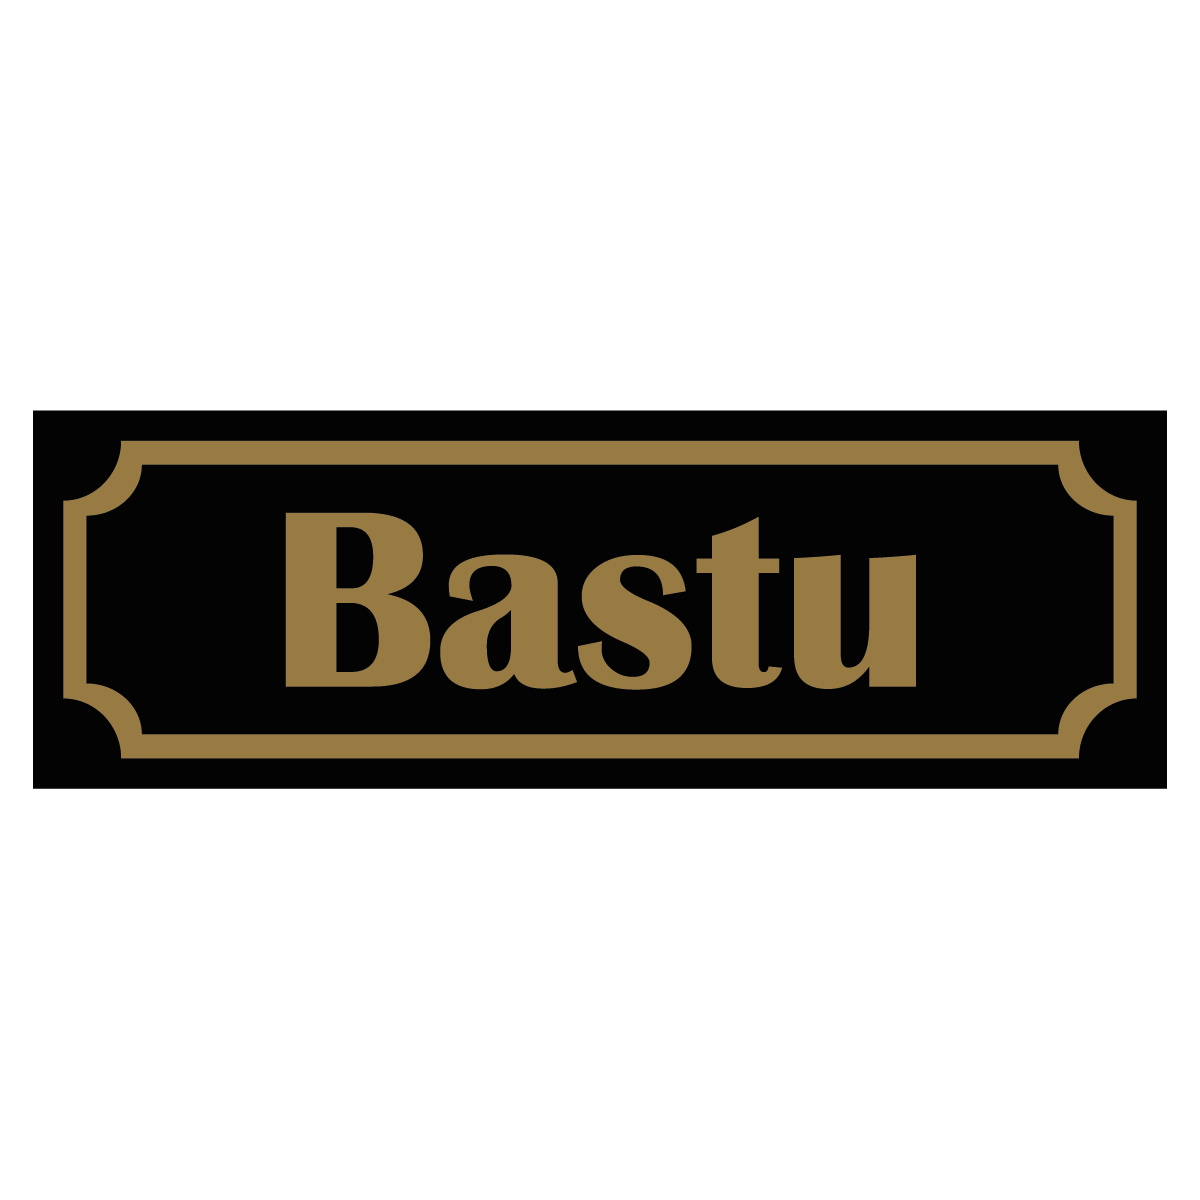 Bastu - Skylt - 150x50mm - Svart - Guld